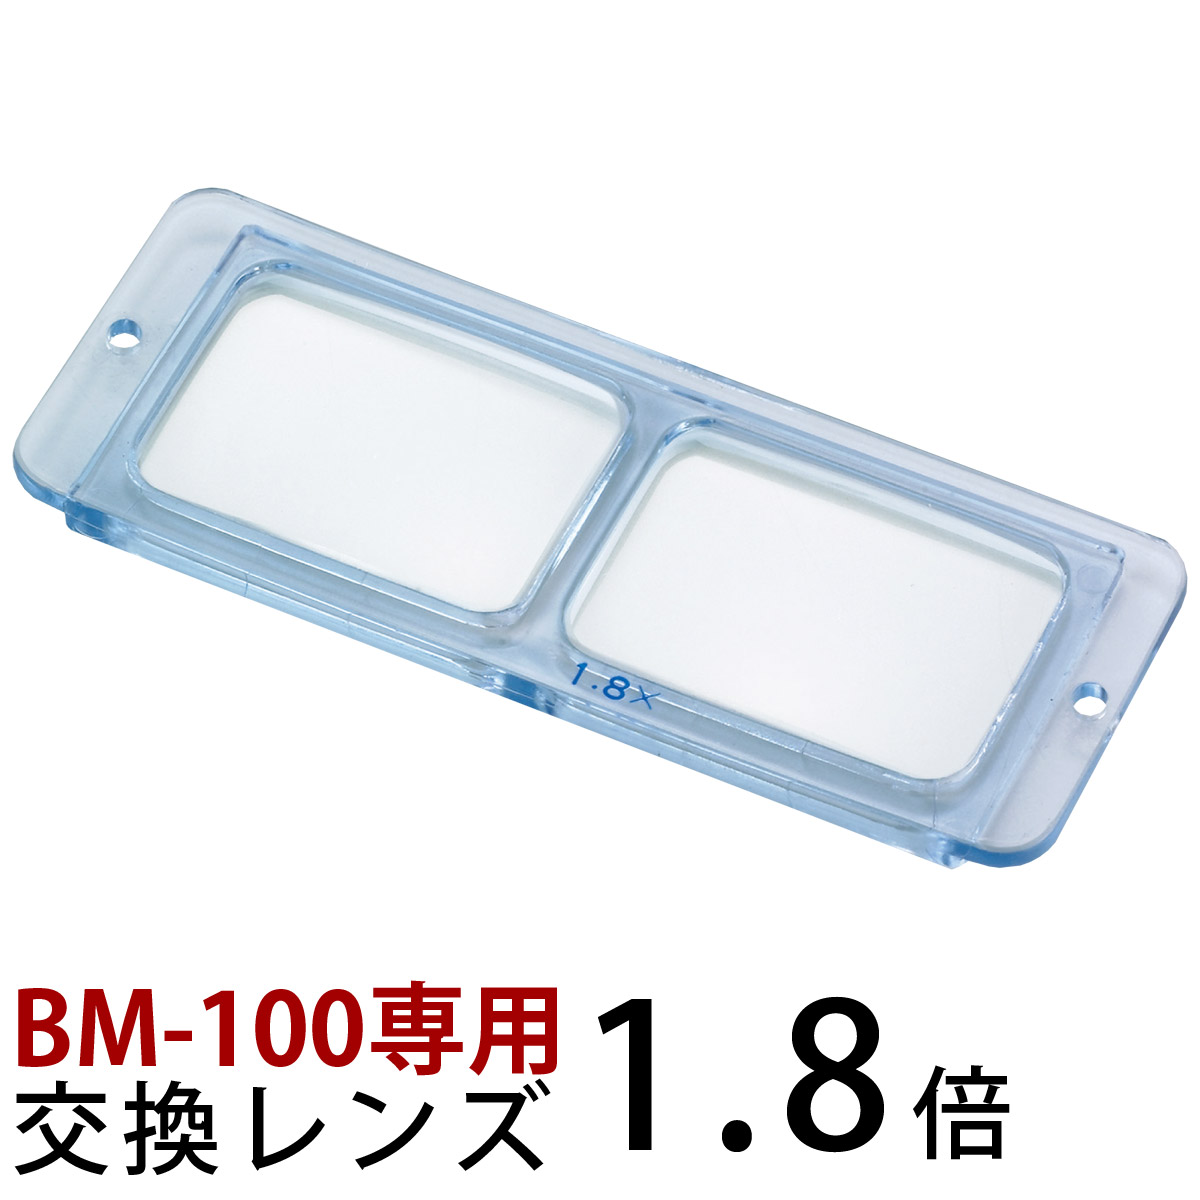 ヘッドルーペ 双眼 交換レンズ BM-100A1 1.8倍 BM-100専用 池田レンズ